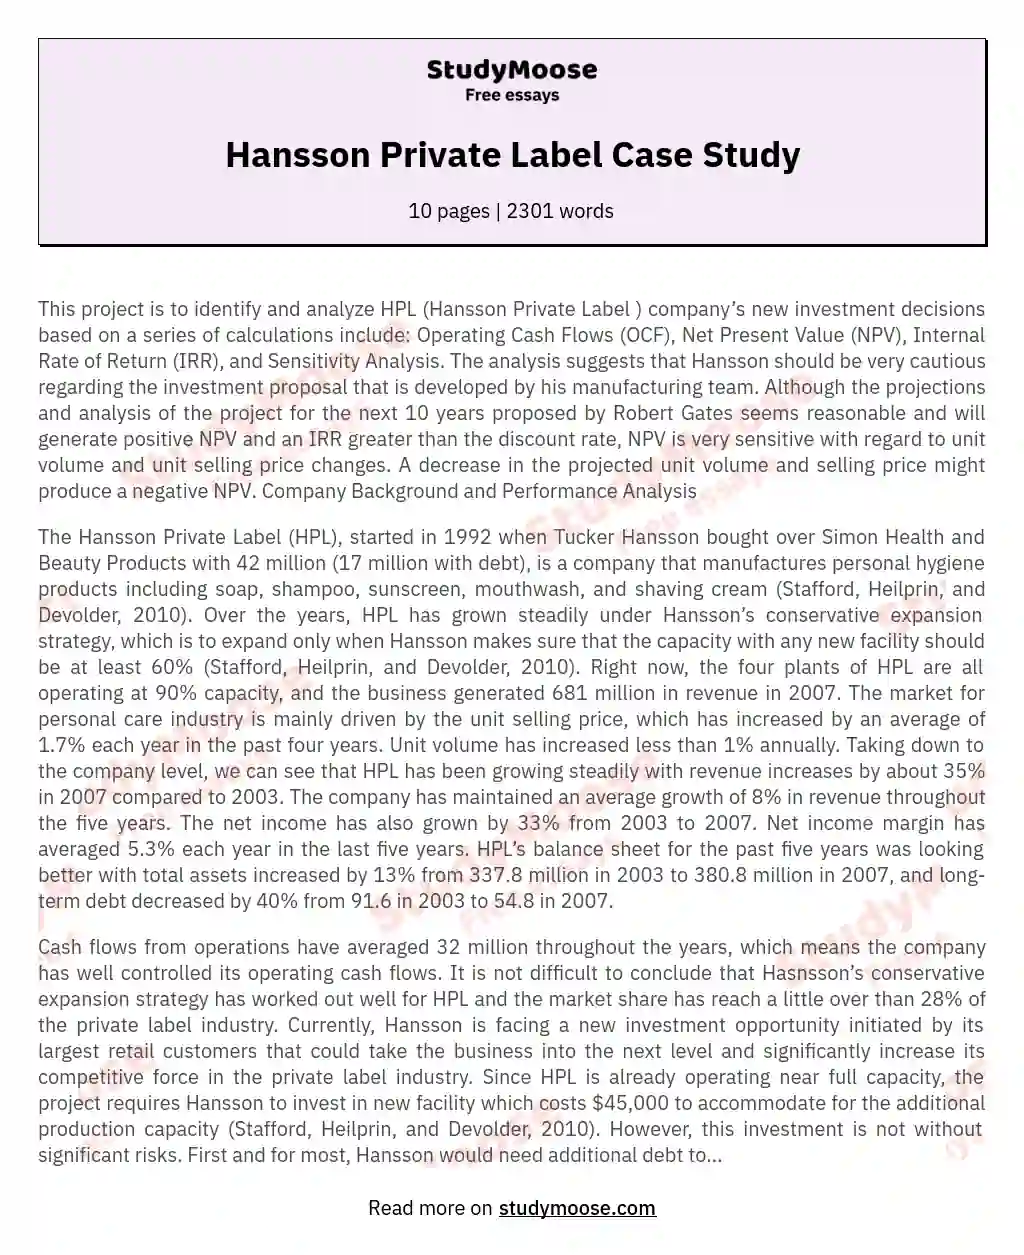 Hansson Private Label Case Study essay